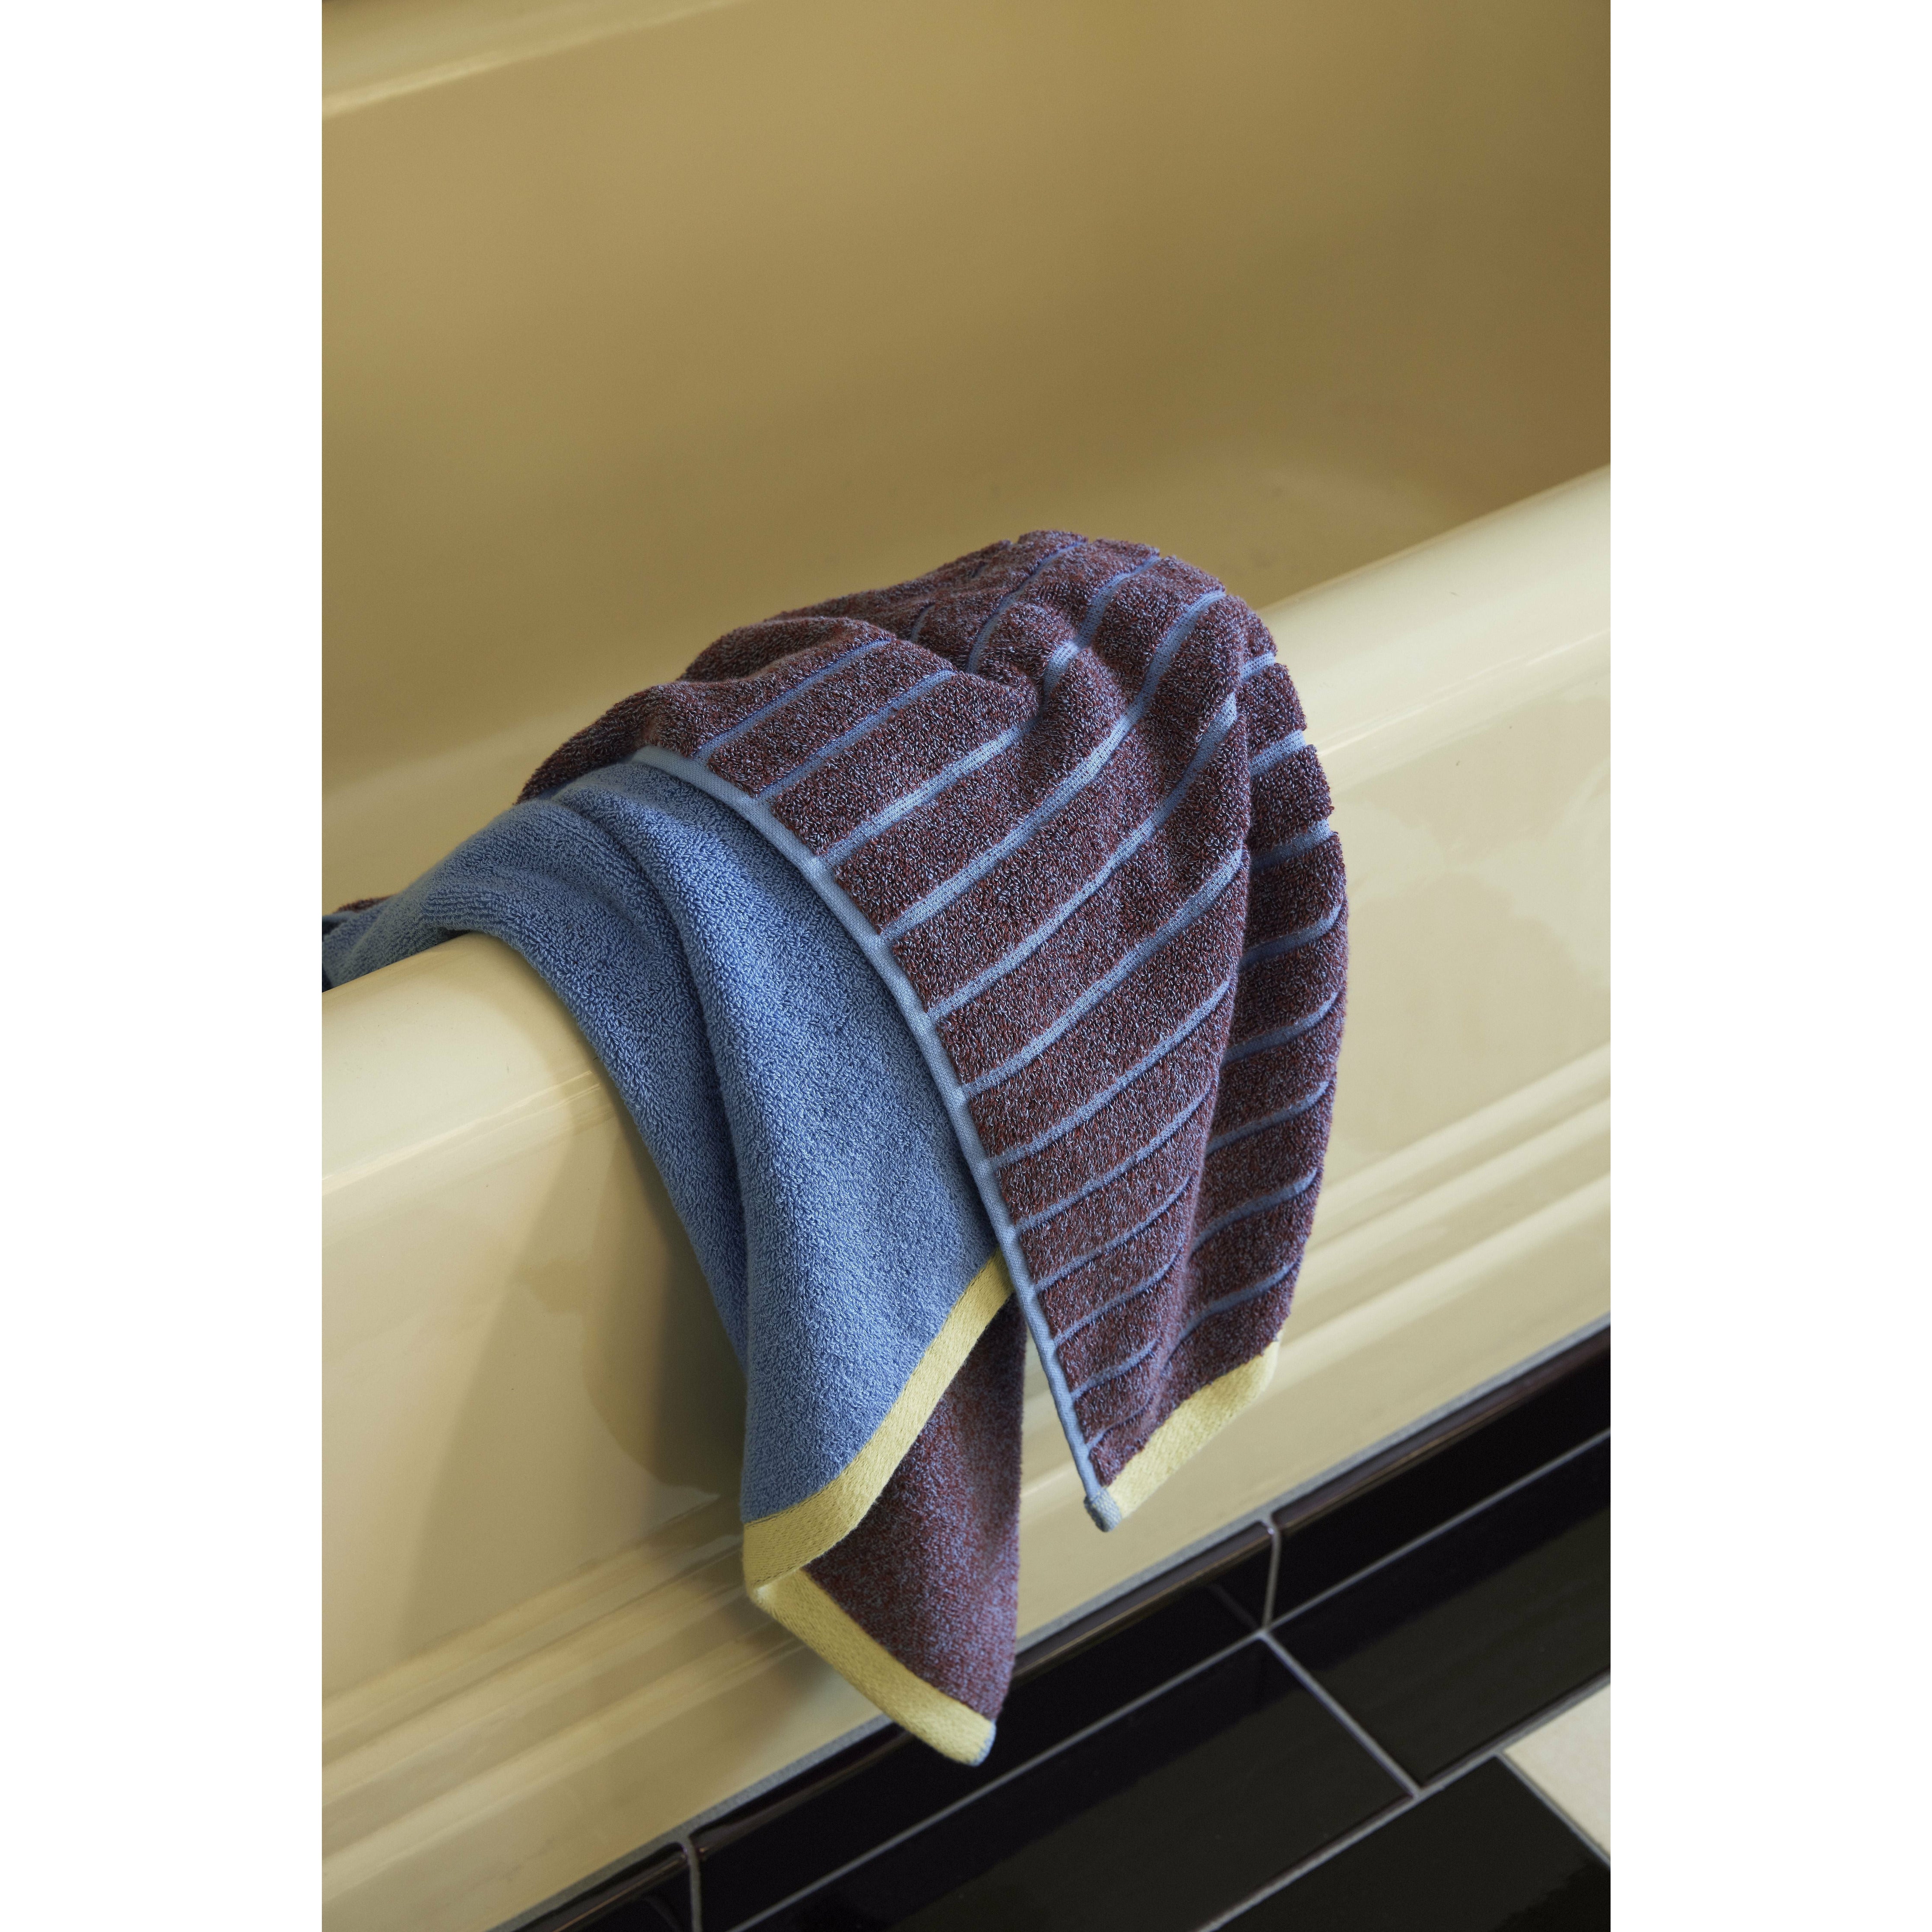 Hübsch promenádová ručník velký, fialový/modrý